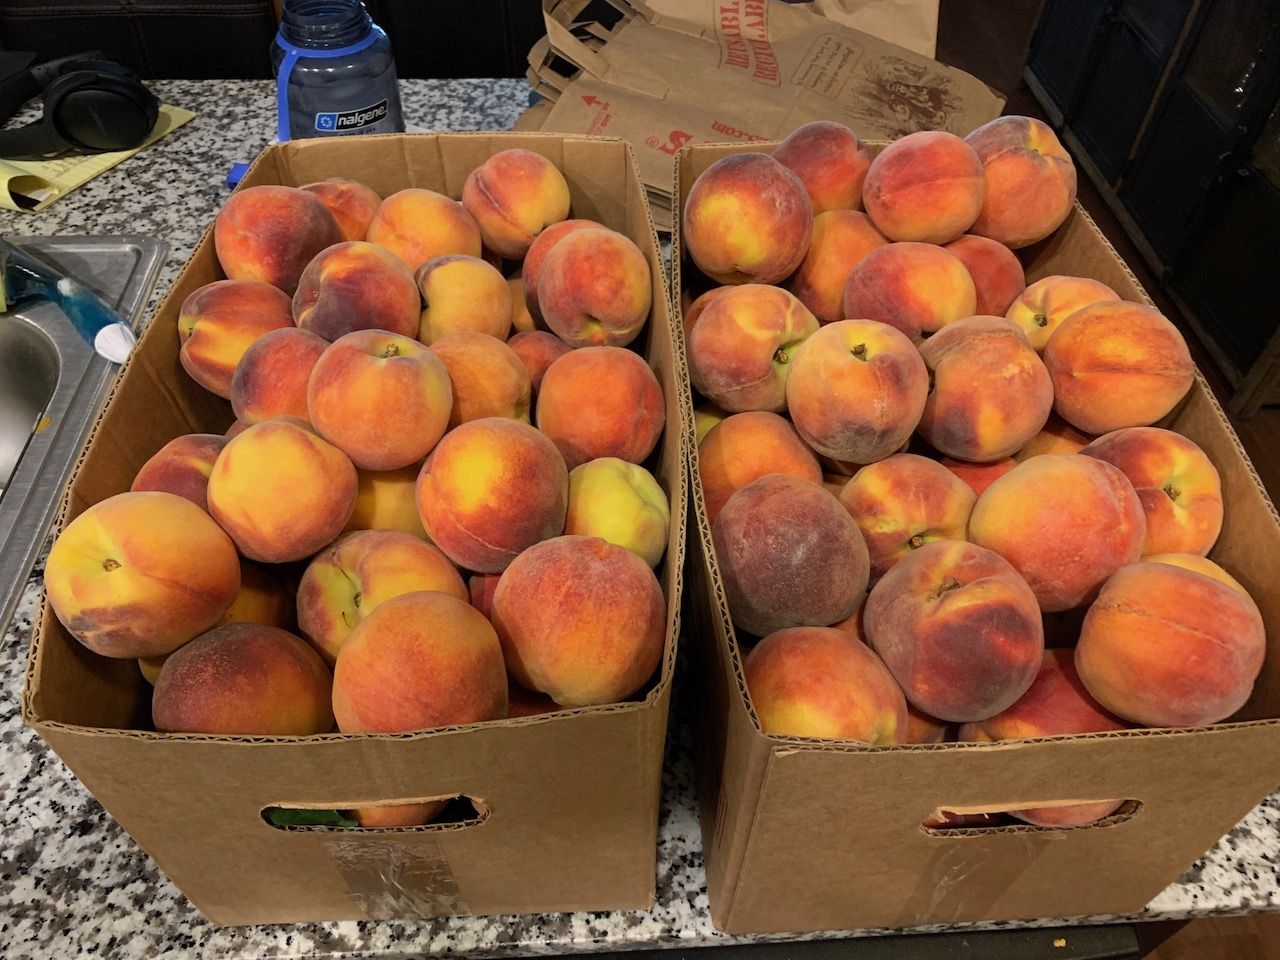 So many peaches